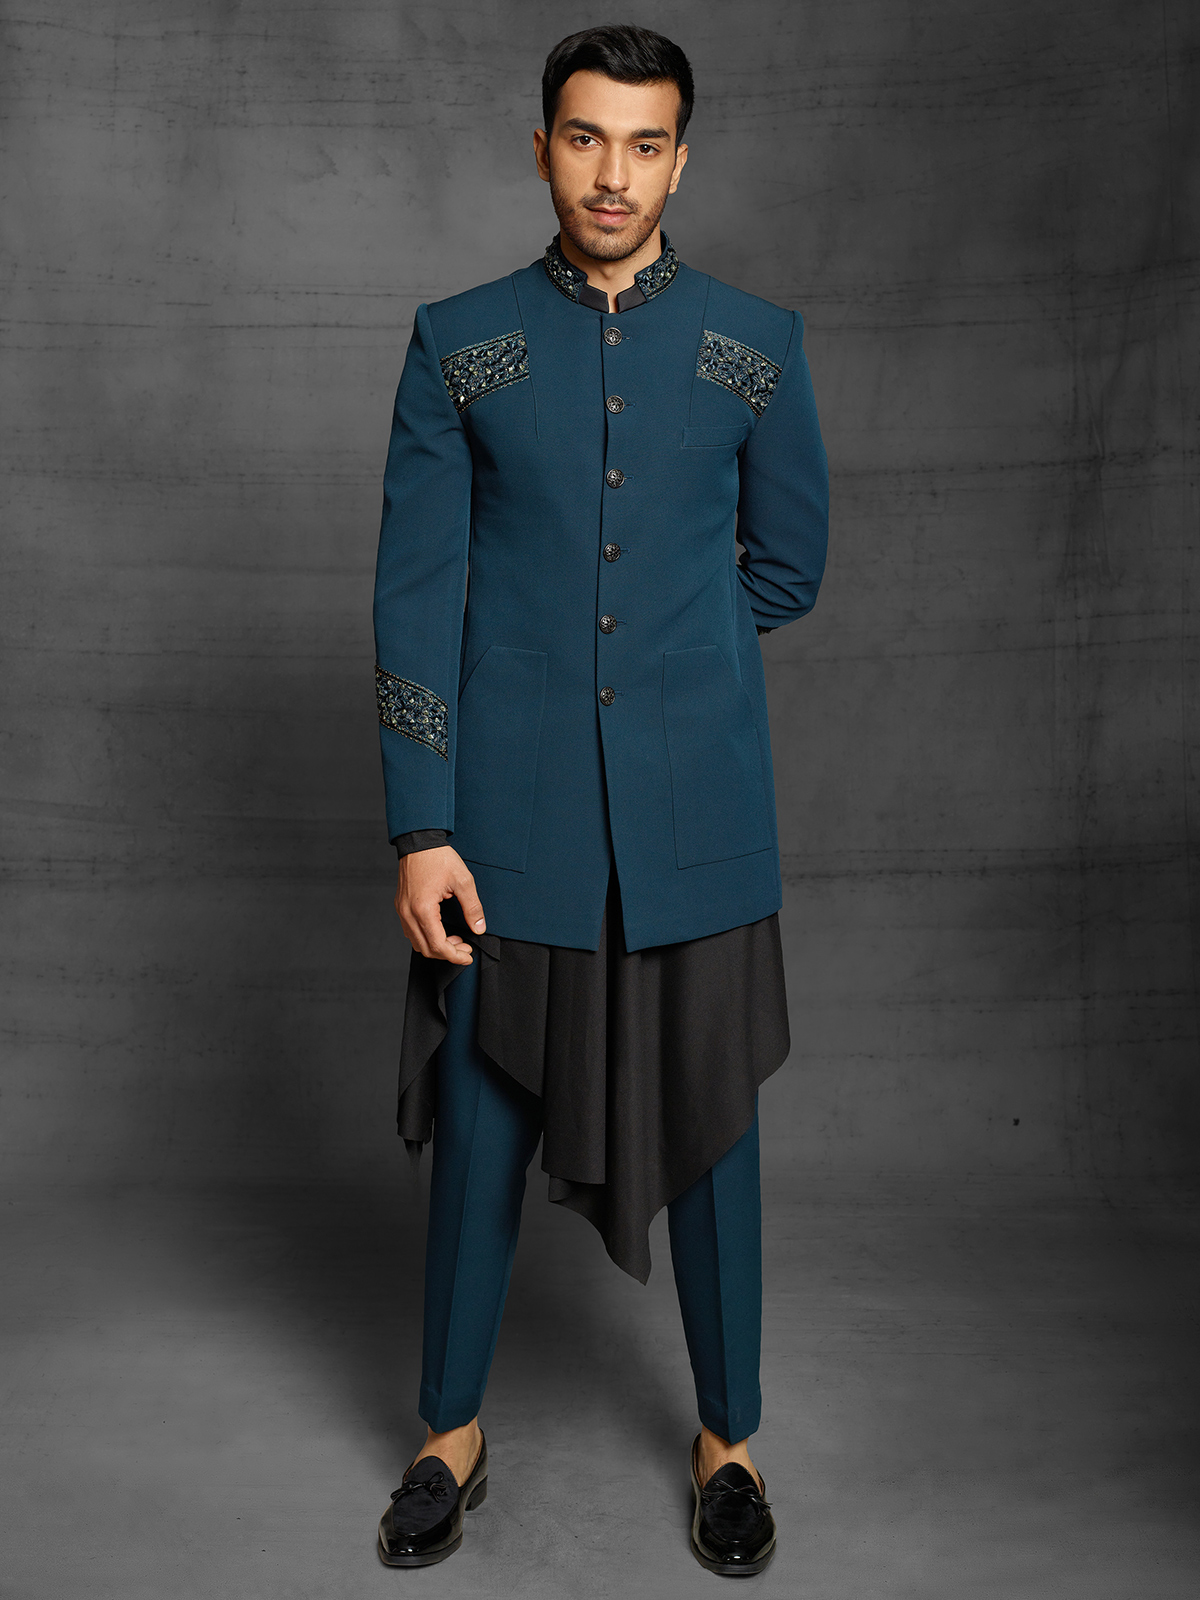 Navy Blue Flannel Suit - Tailored Suit Paris